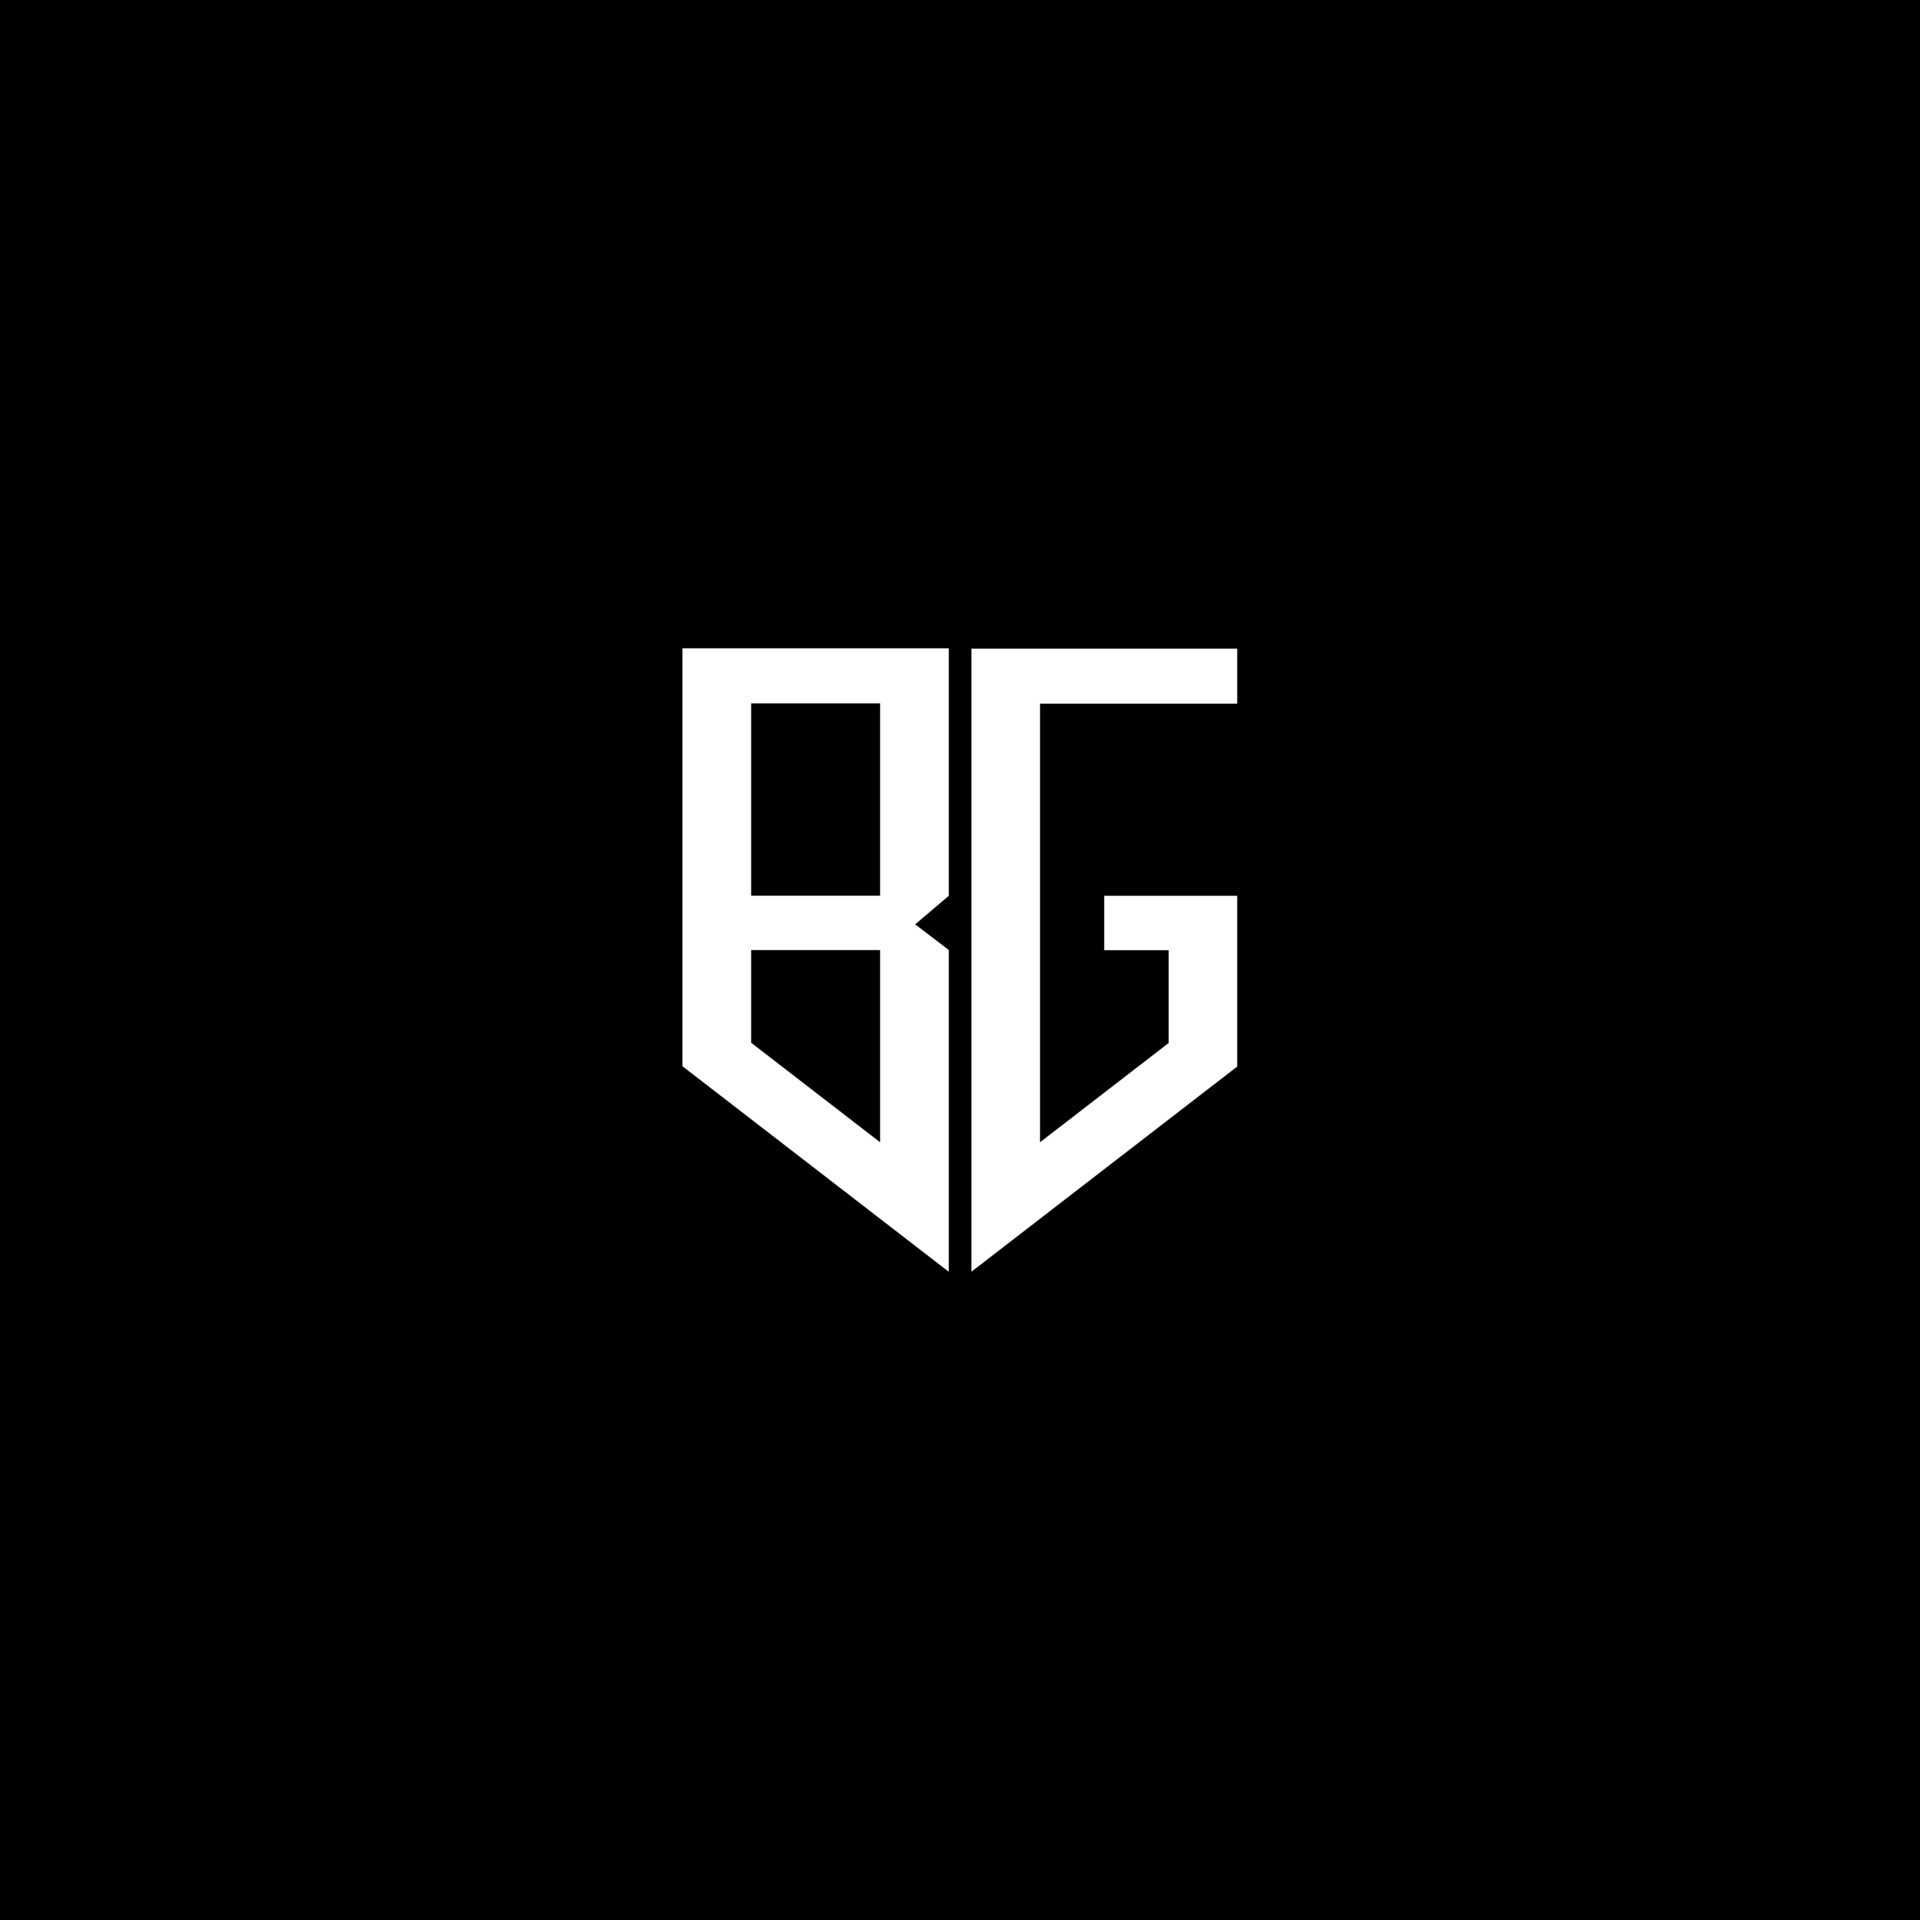 BG letter logo design with black background in illustrator. Vector logo ...